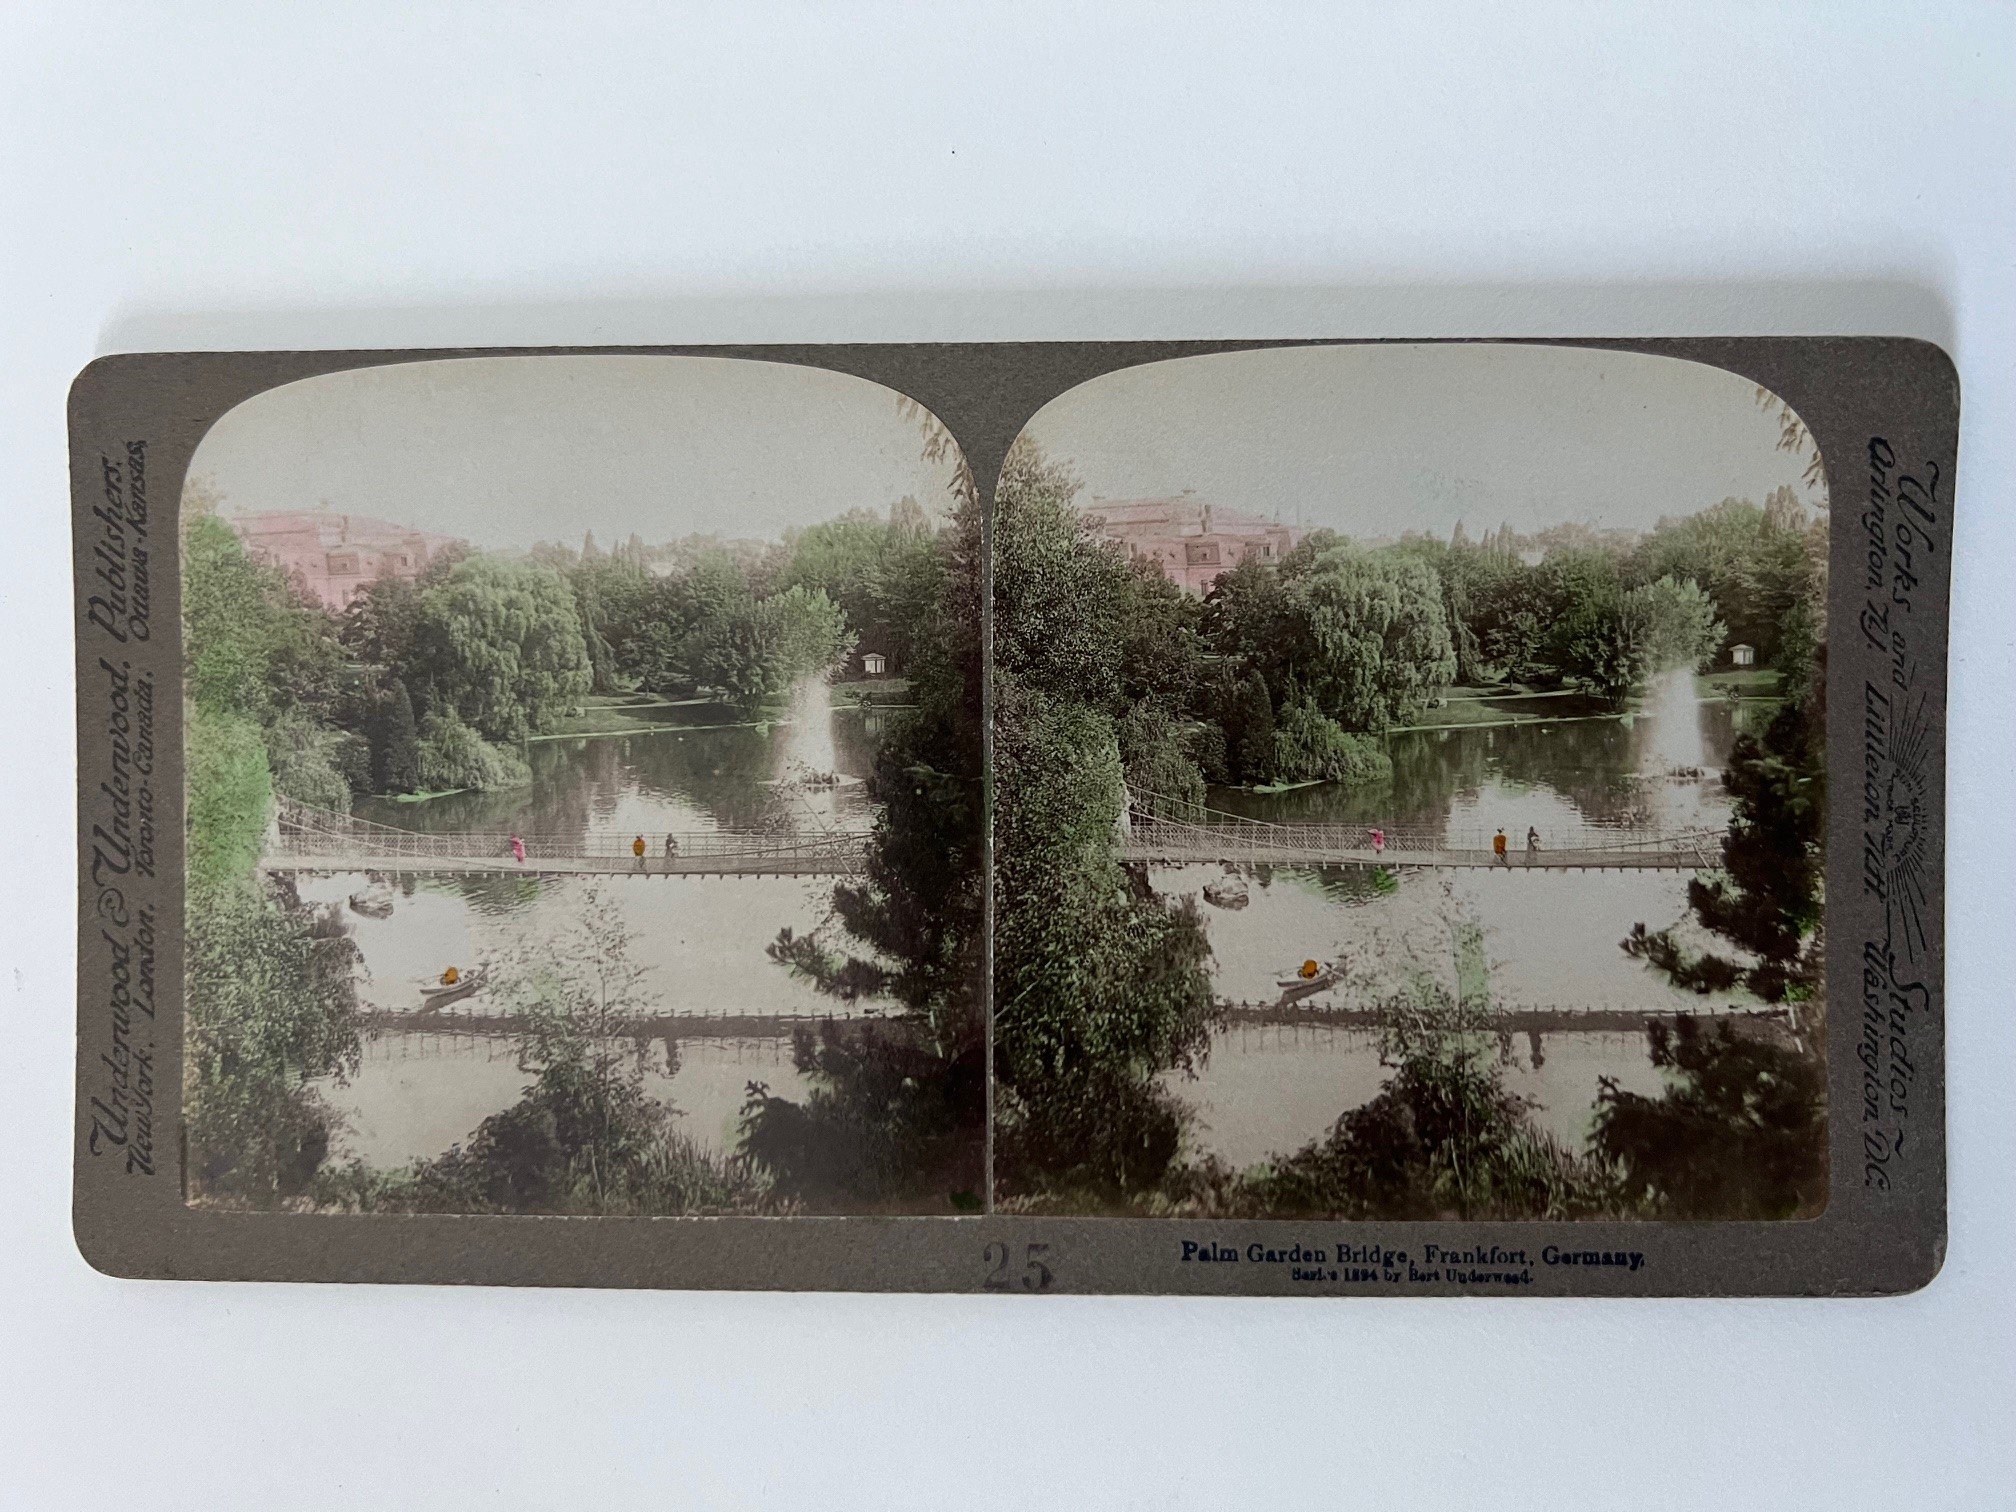 Stereobild, Underwood & Underwood, Frankfurt, Palm Garden Bridge, ca. 1910. (Taunus-Rhein-Main - Regionalgeschichtliche Sammlung Dr. Stefan Naas CC BY-NC-SA)